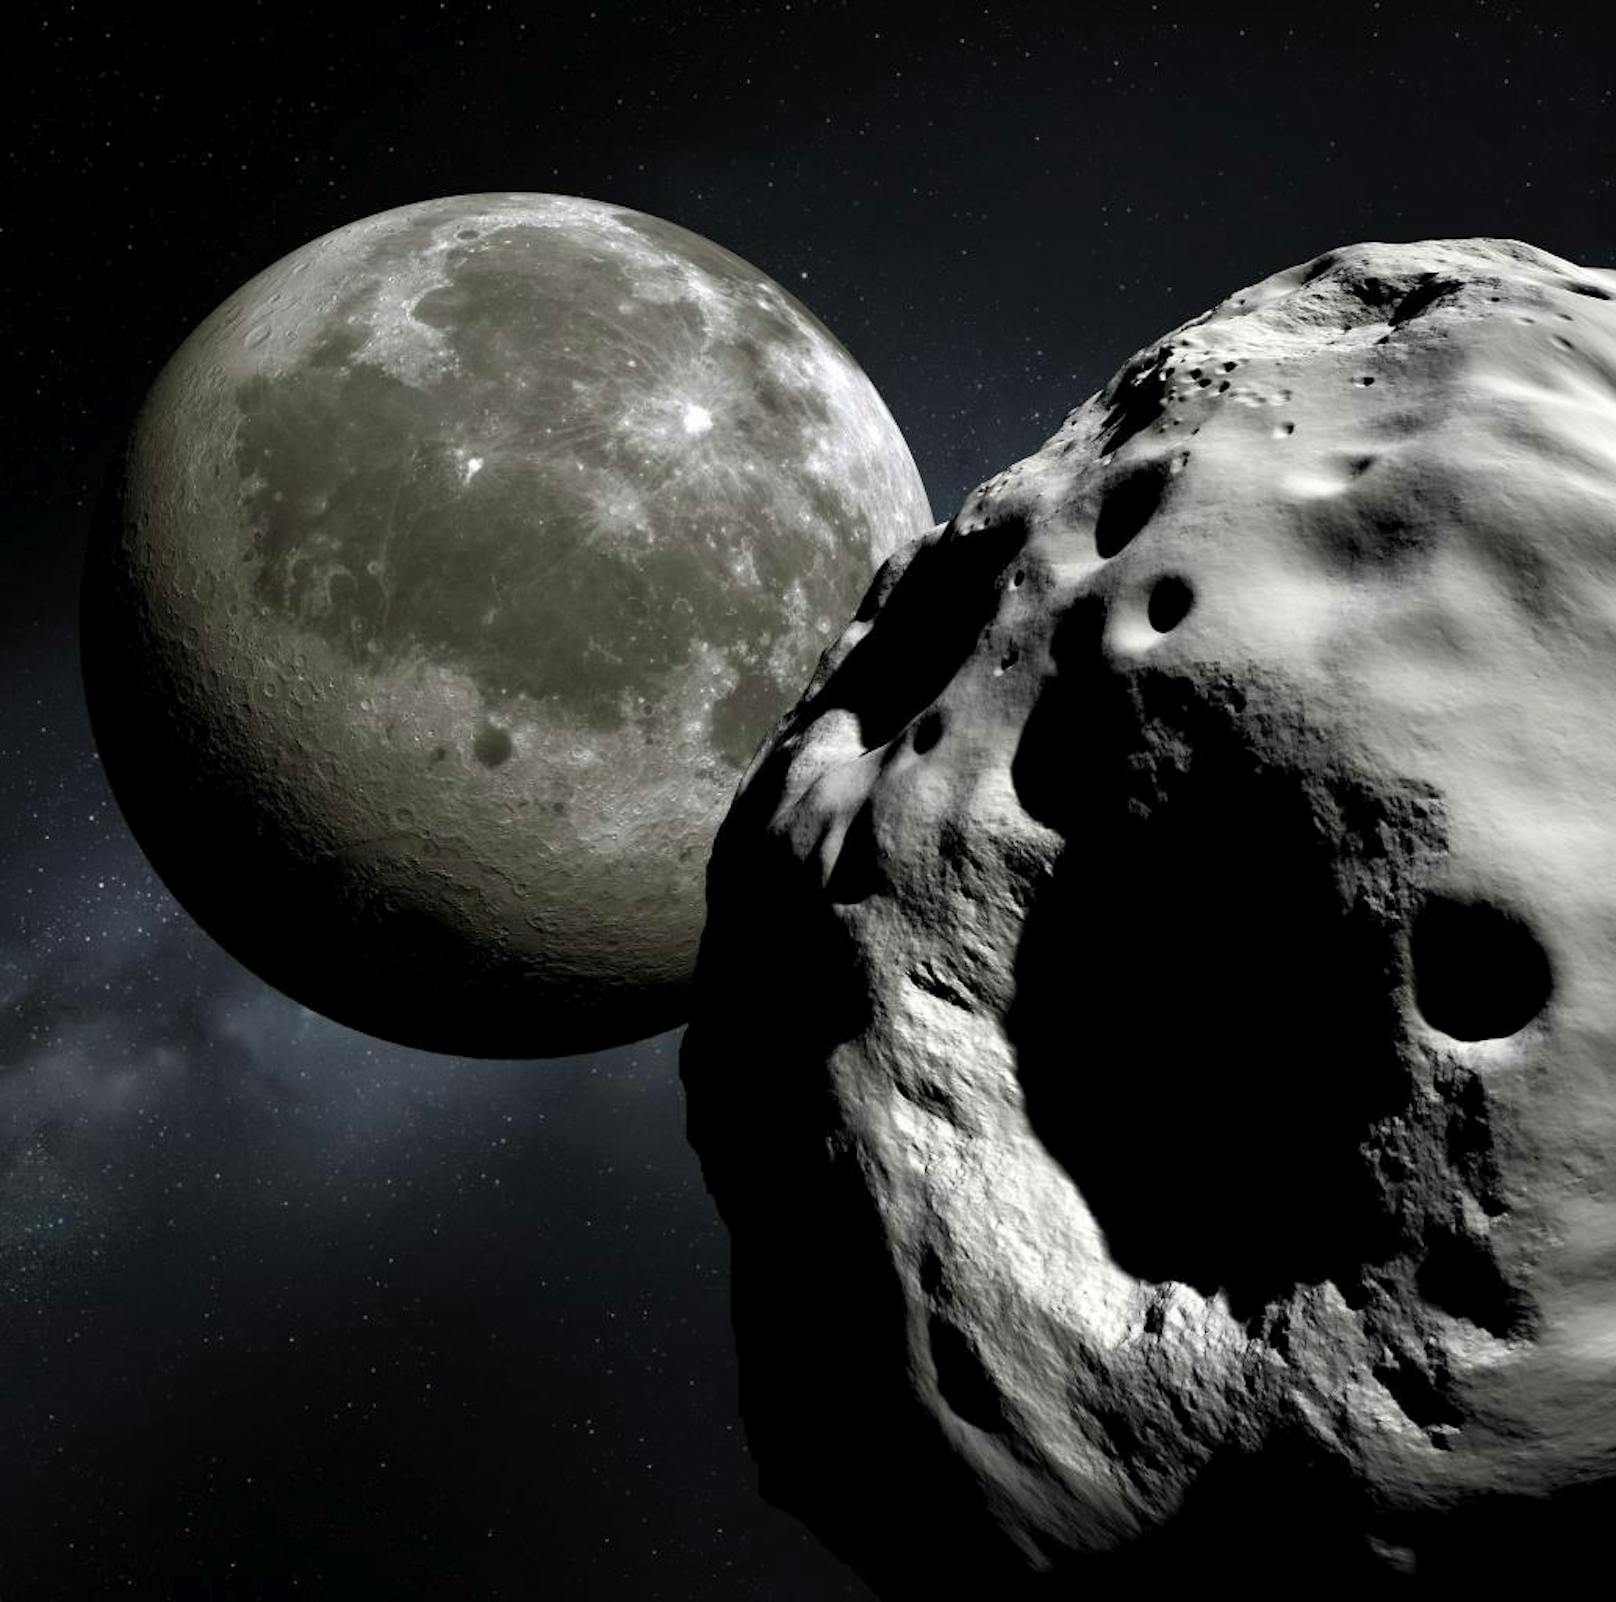 An seiner nächsten Stelle ist der 300-Meter-Brocken der Erde zehnmal Näher als der Mond. Auch dem Erdtrabanten wird er bei seinem Vorbeiflug im April 2029 sehr nahe kommen.